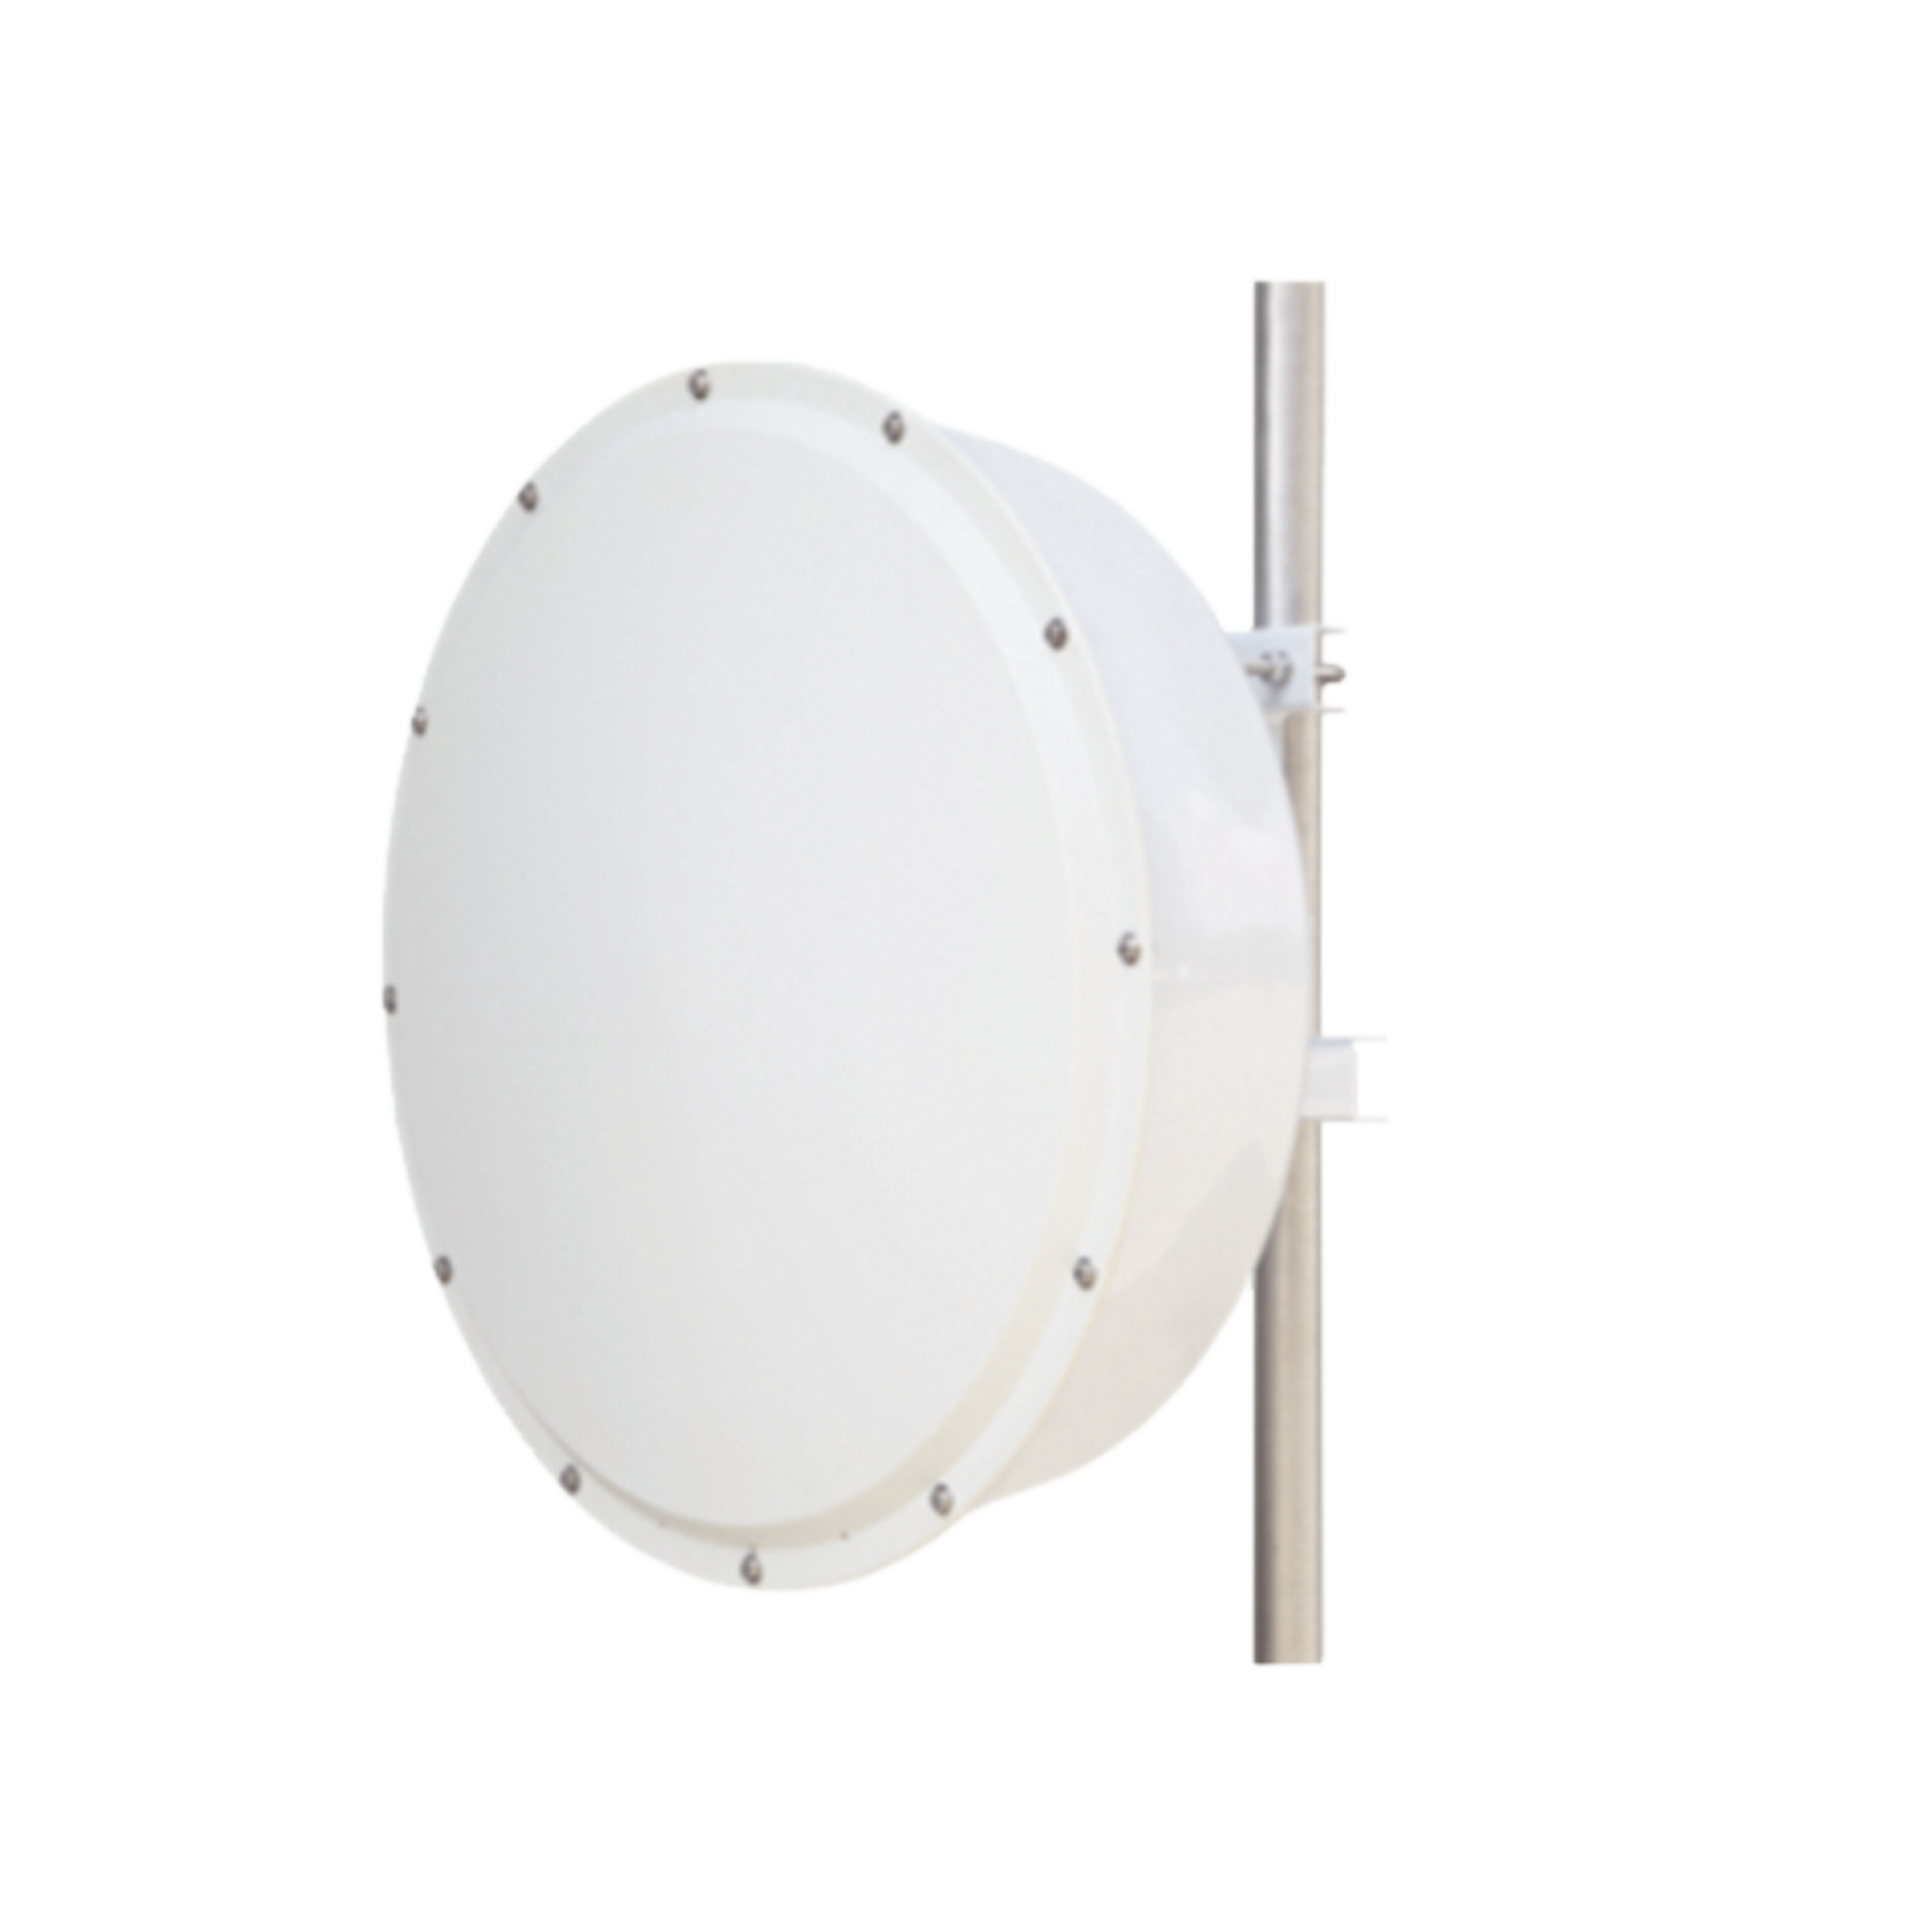 Antena direccional de alta resistencia, Ganancia 30 dBi, (4.9 -6.5 GHz), Plato hondo para mayor inmunidad al ruido, Conectores N-Hembra, Montaje y radomo incluido